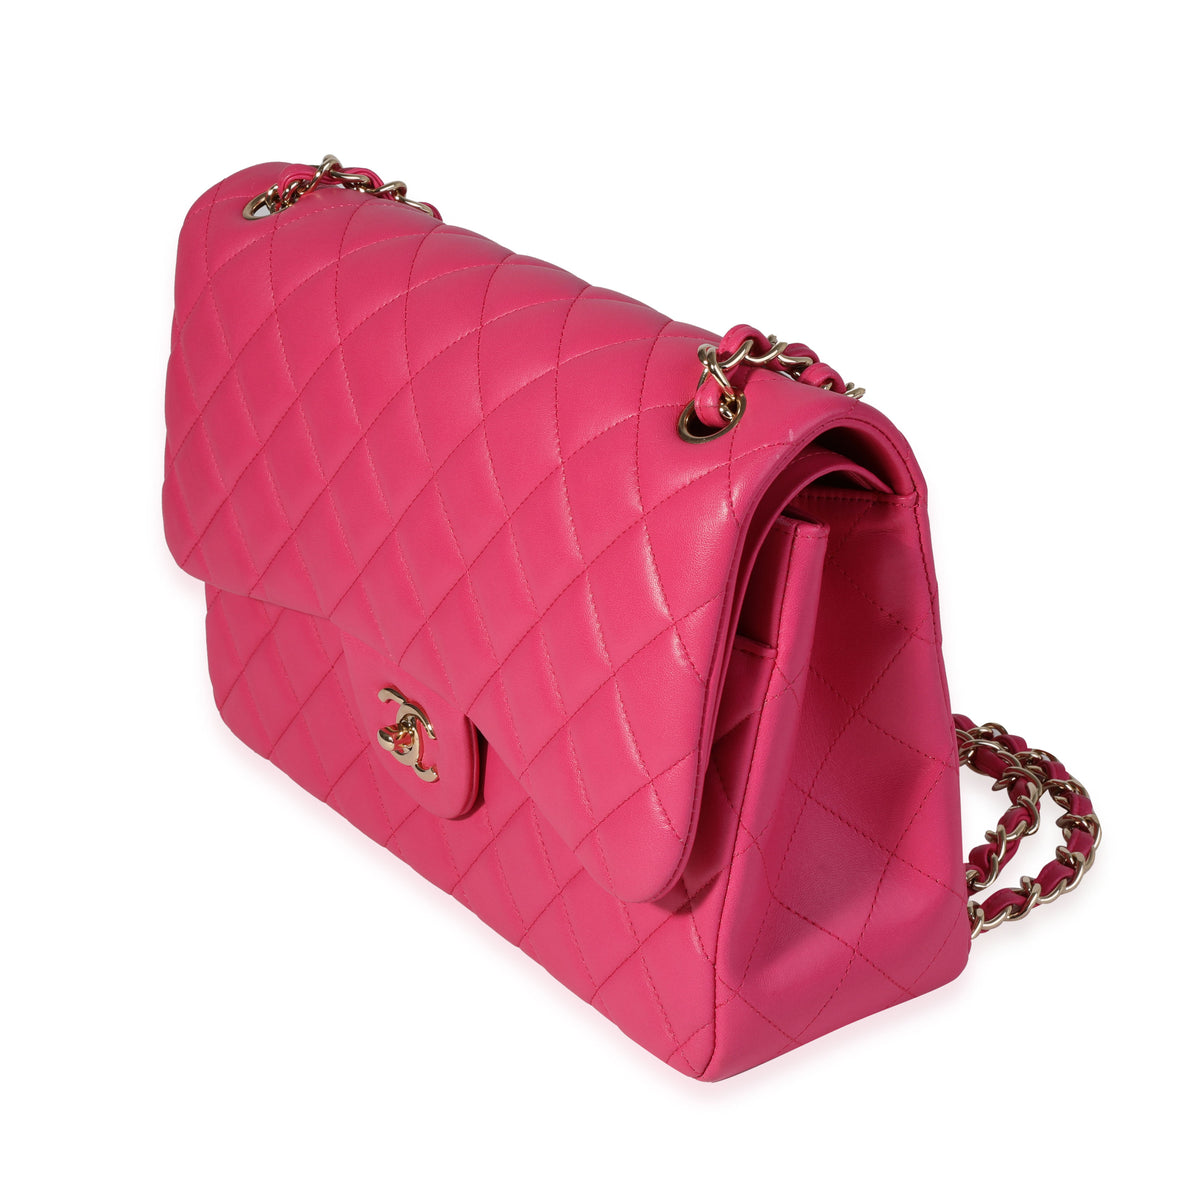 Hot Pink Handbag - 48 For Sale on 1stDibs  hot pink purse, bright pink  handbag, neon pink handbag